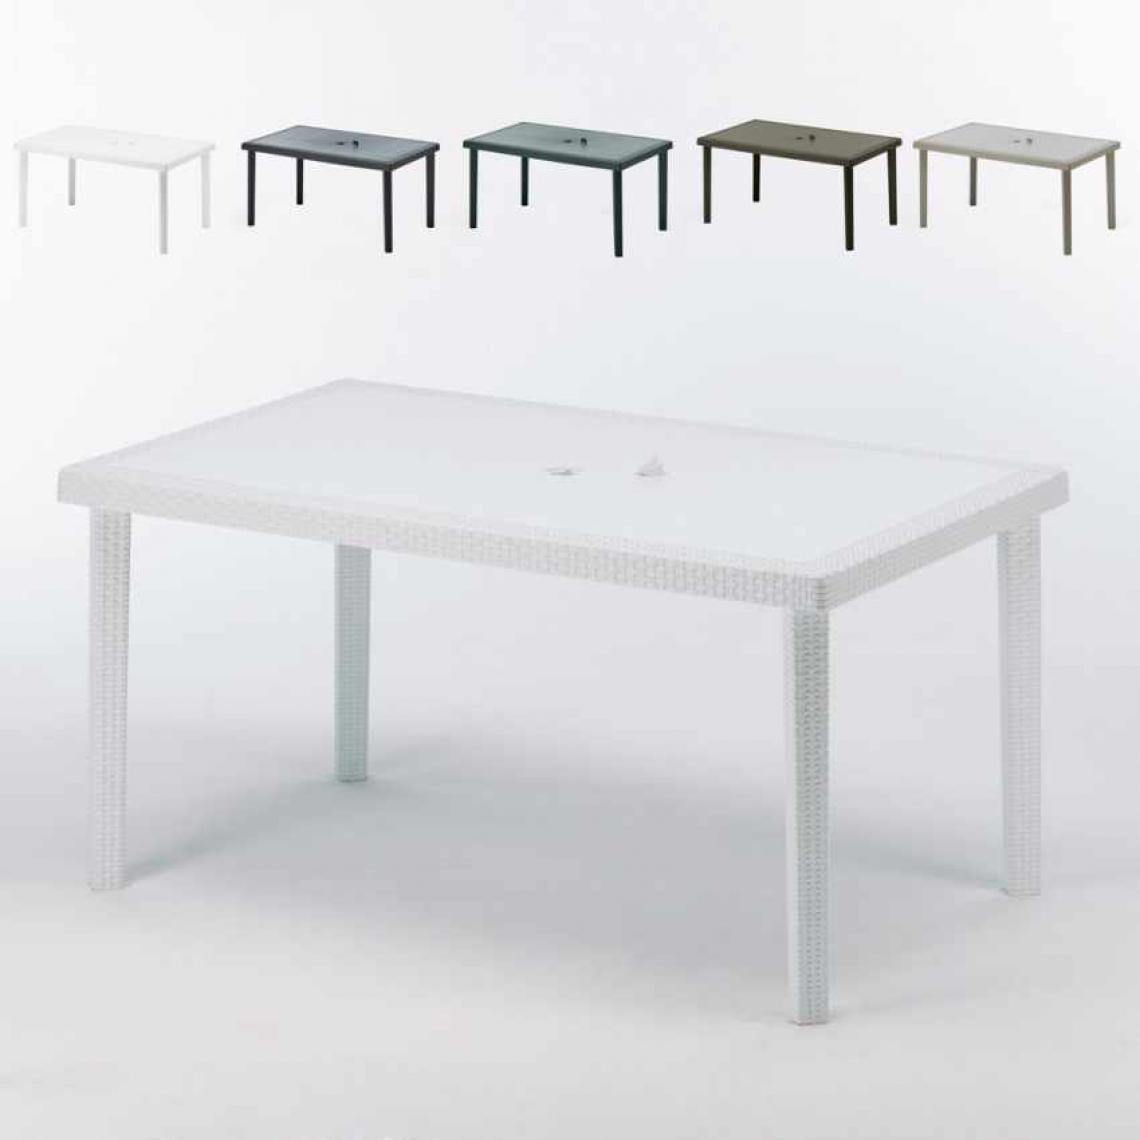 Grand Soleil - 12 Tables de jardin rectangulaire en poly-rotin bar café bistrot 150x90, Couleur: Blanc - Tables de jardin